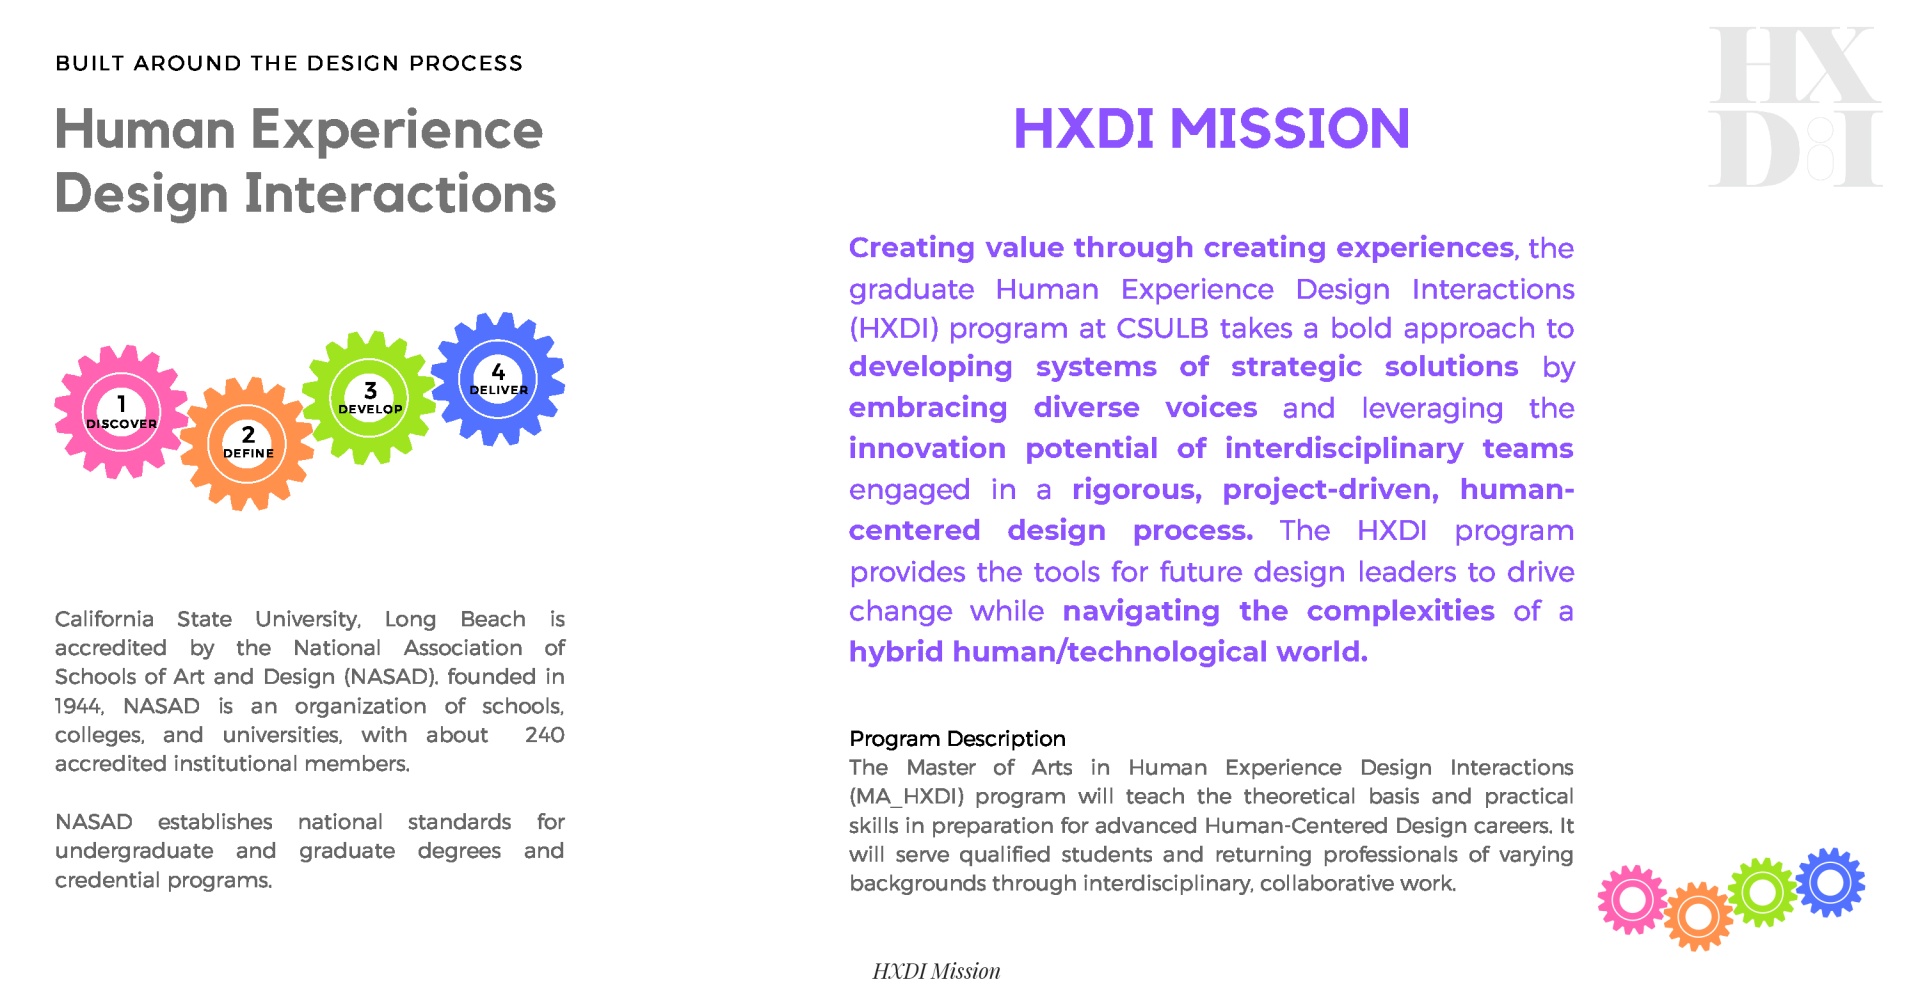 HXDI Mission graphic